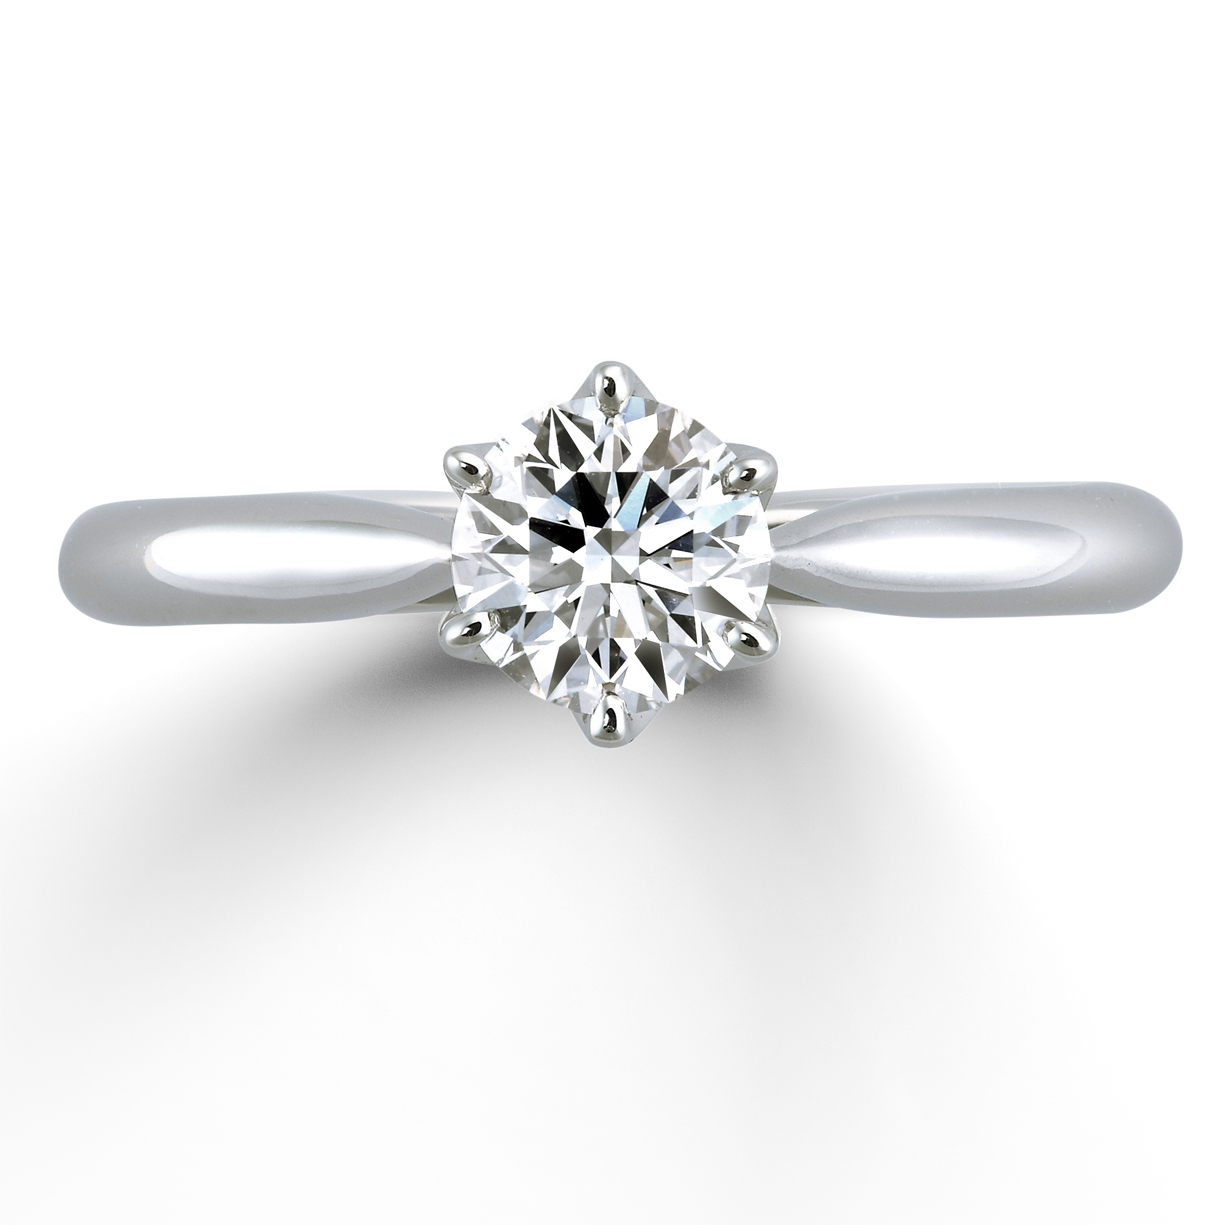 嚴格的基準中所被選定的鑽石作為求婚戒指